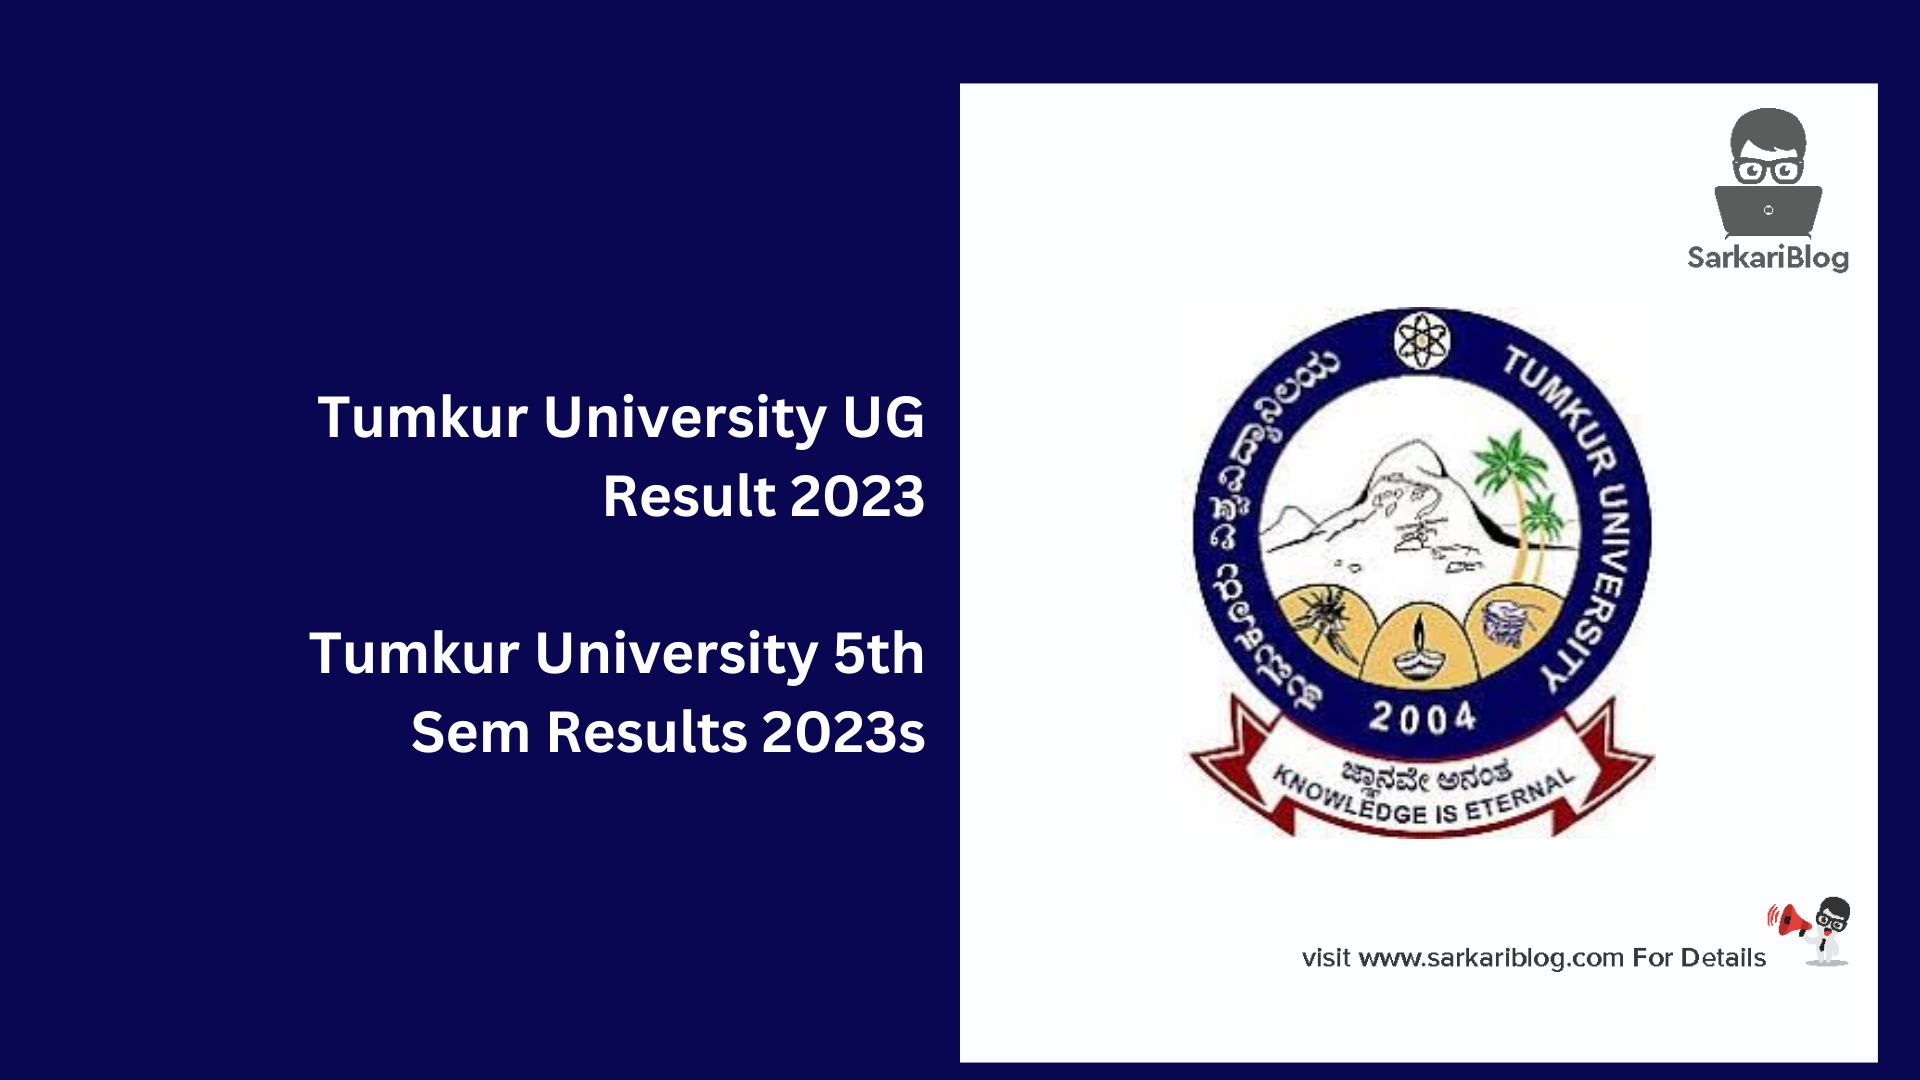 Tumkur University UG Result 2023